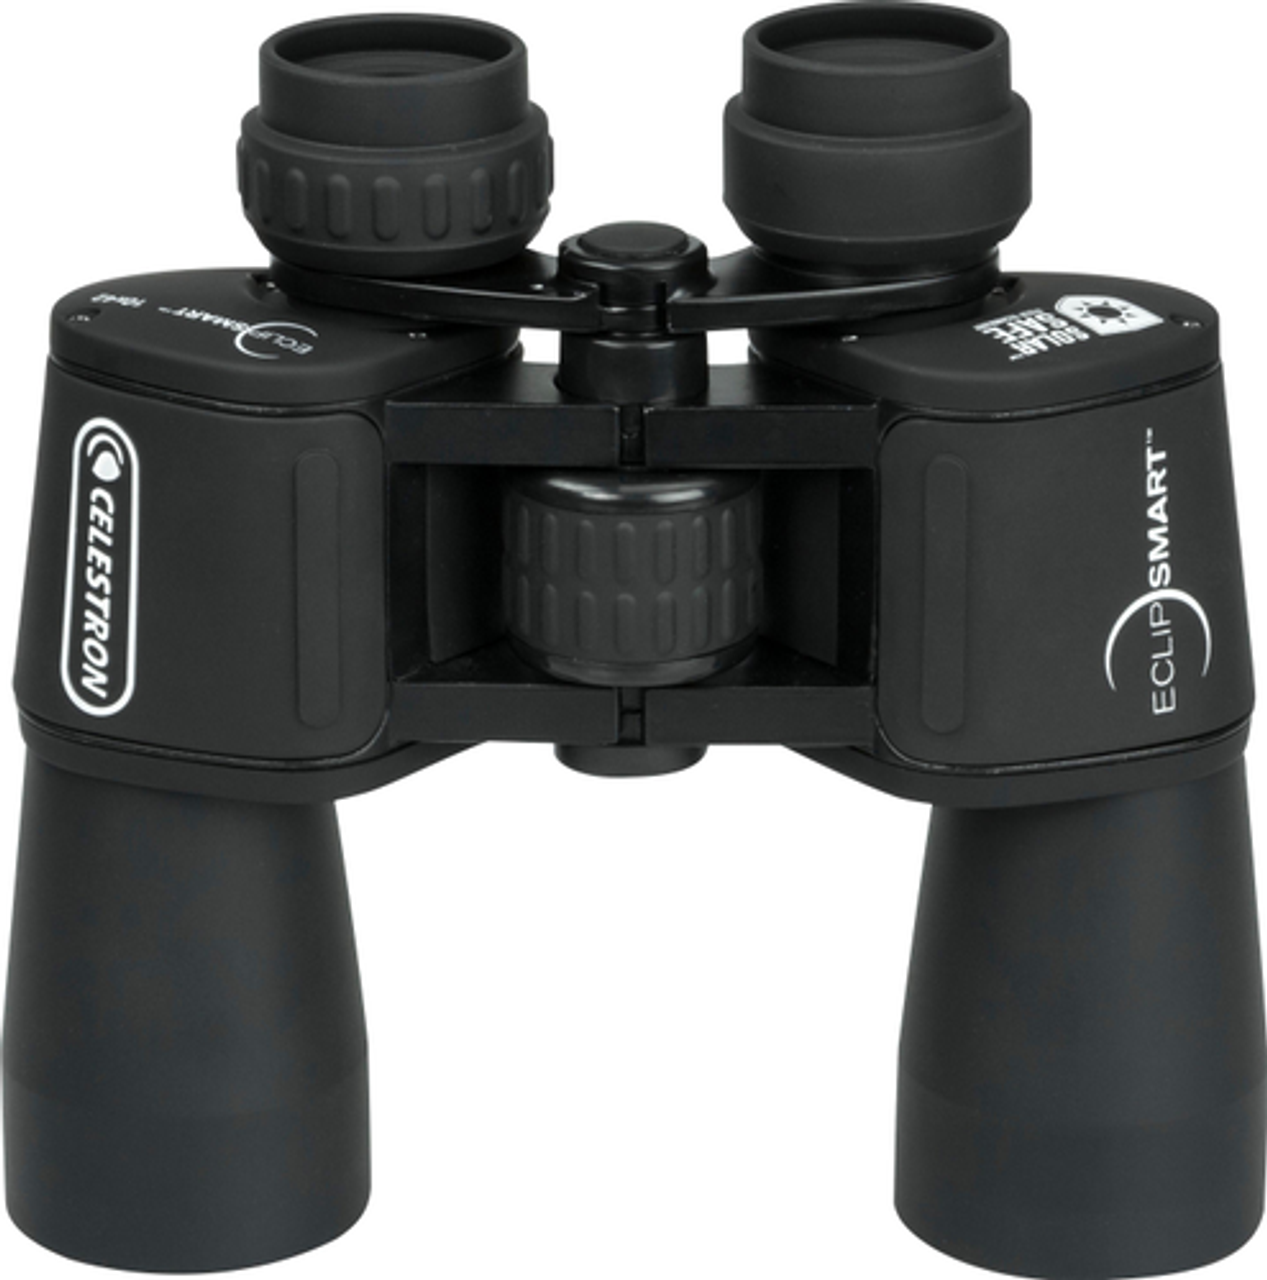 Celestron - EclipSmart 10 x 42 Solar Binoculars - Black